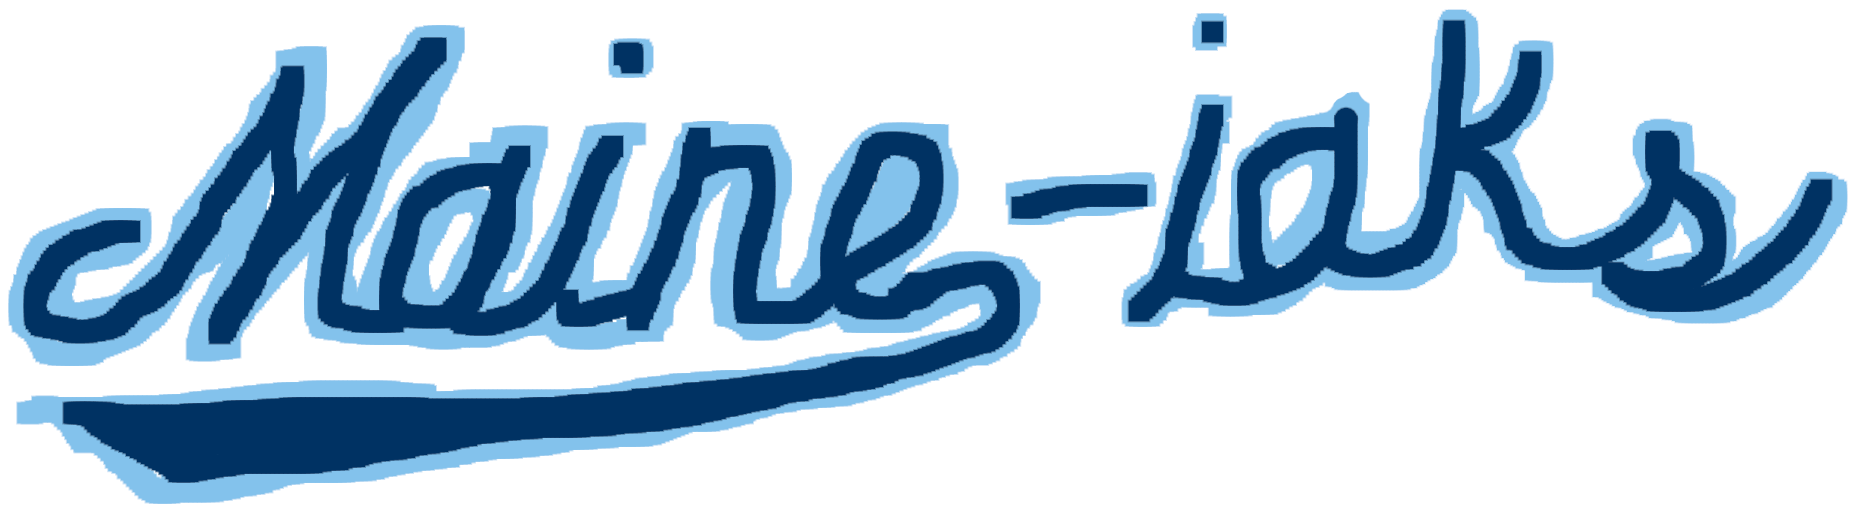 poorly drawn maine-iaks logo